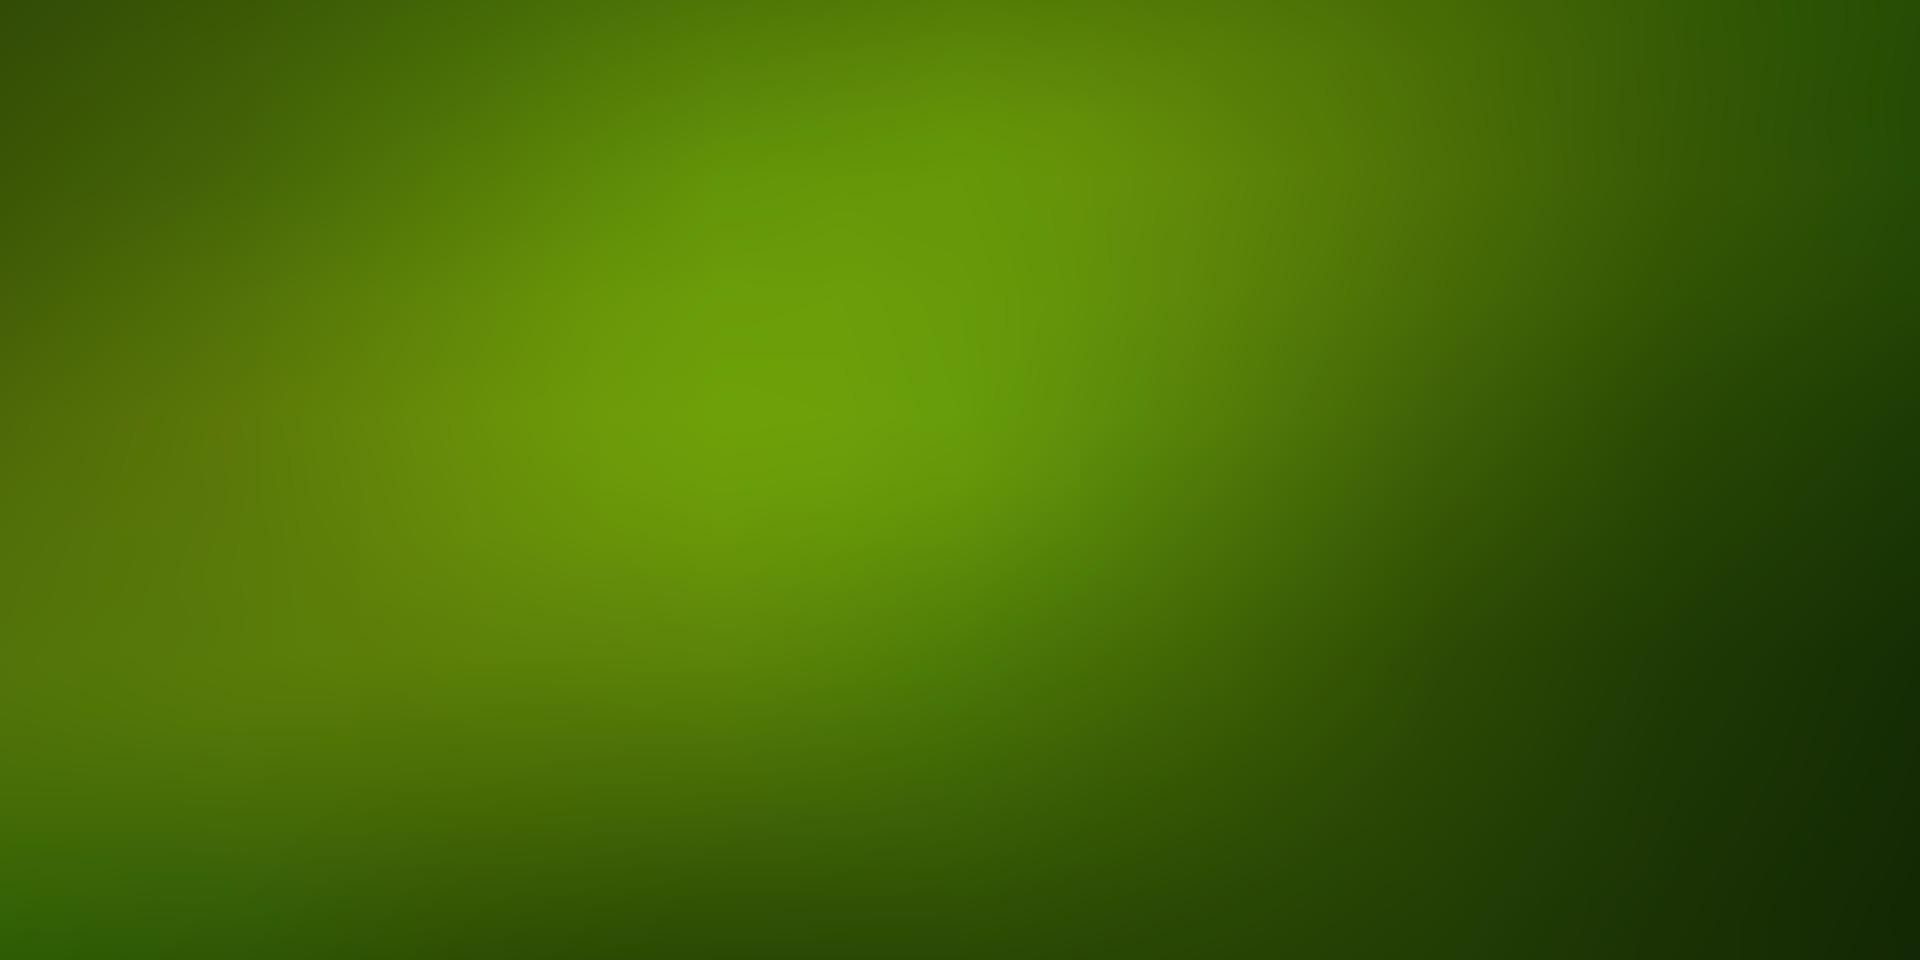 Light Green vector smart blurred texture.